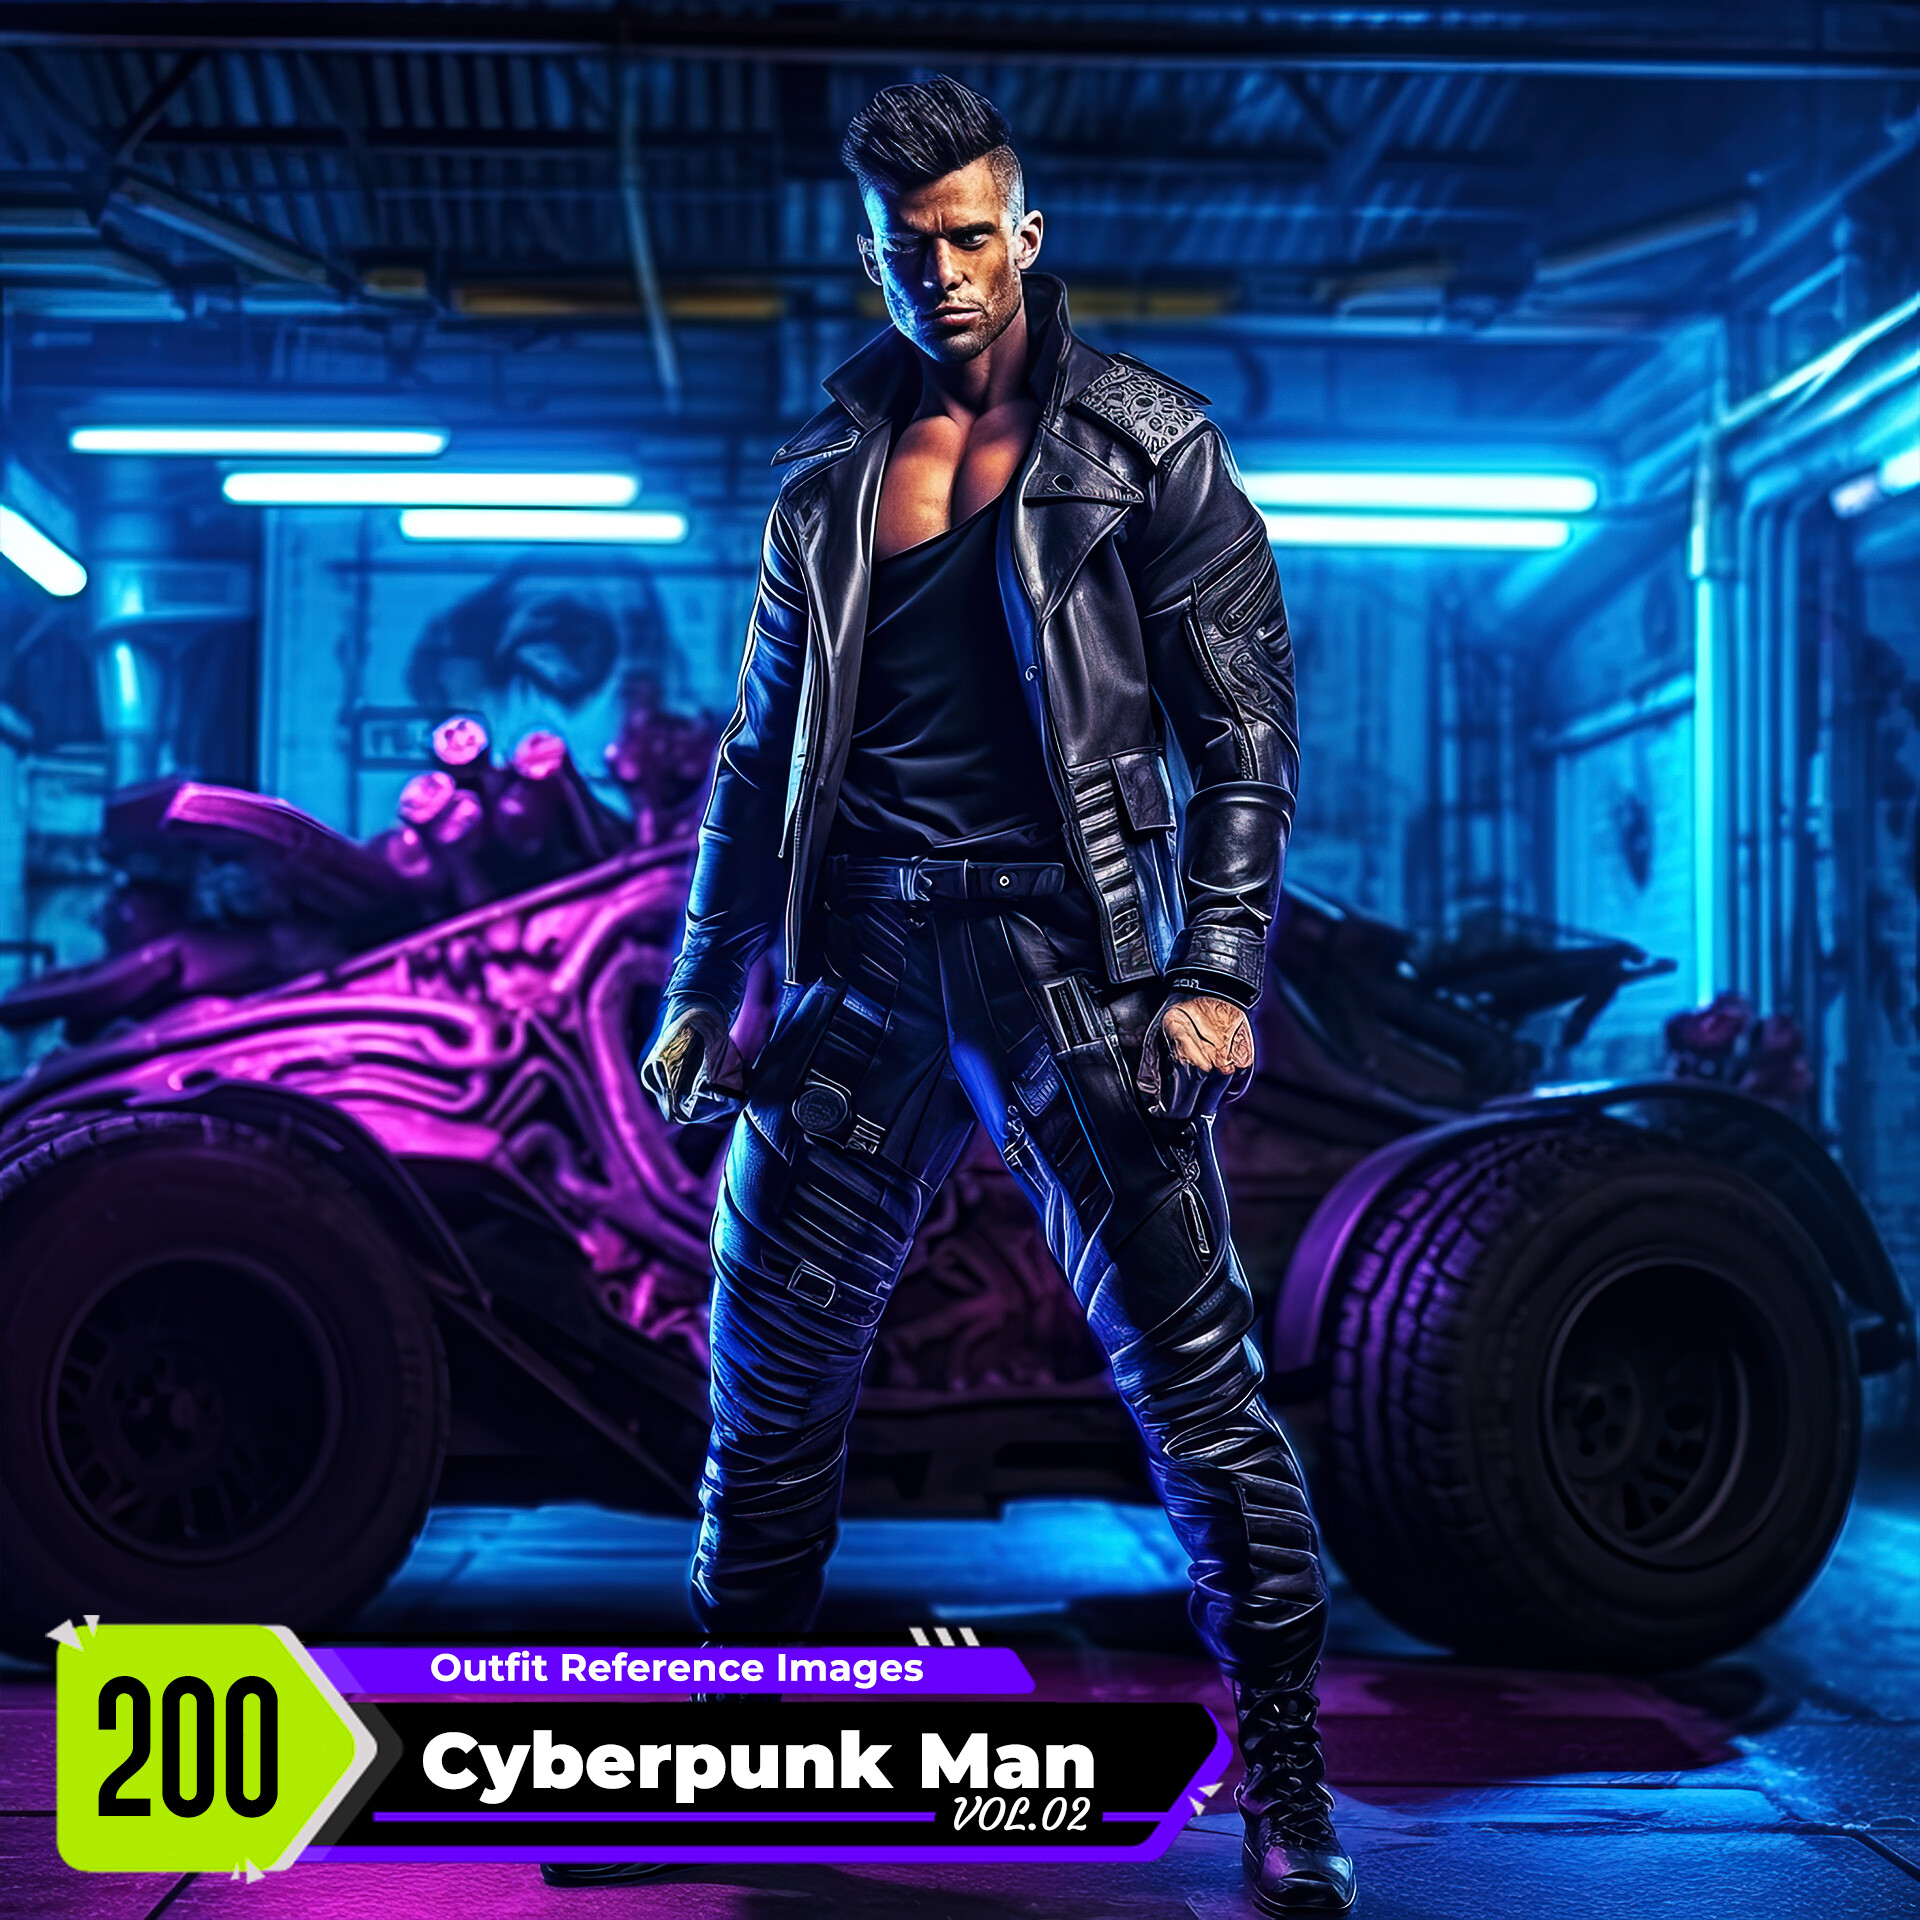 Cyberpunk 2077 Wallpapers in Ultra HD